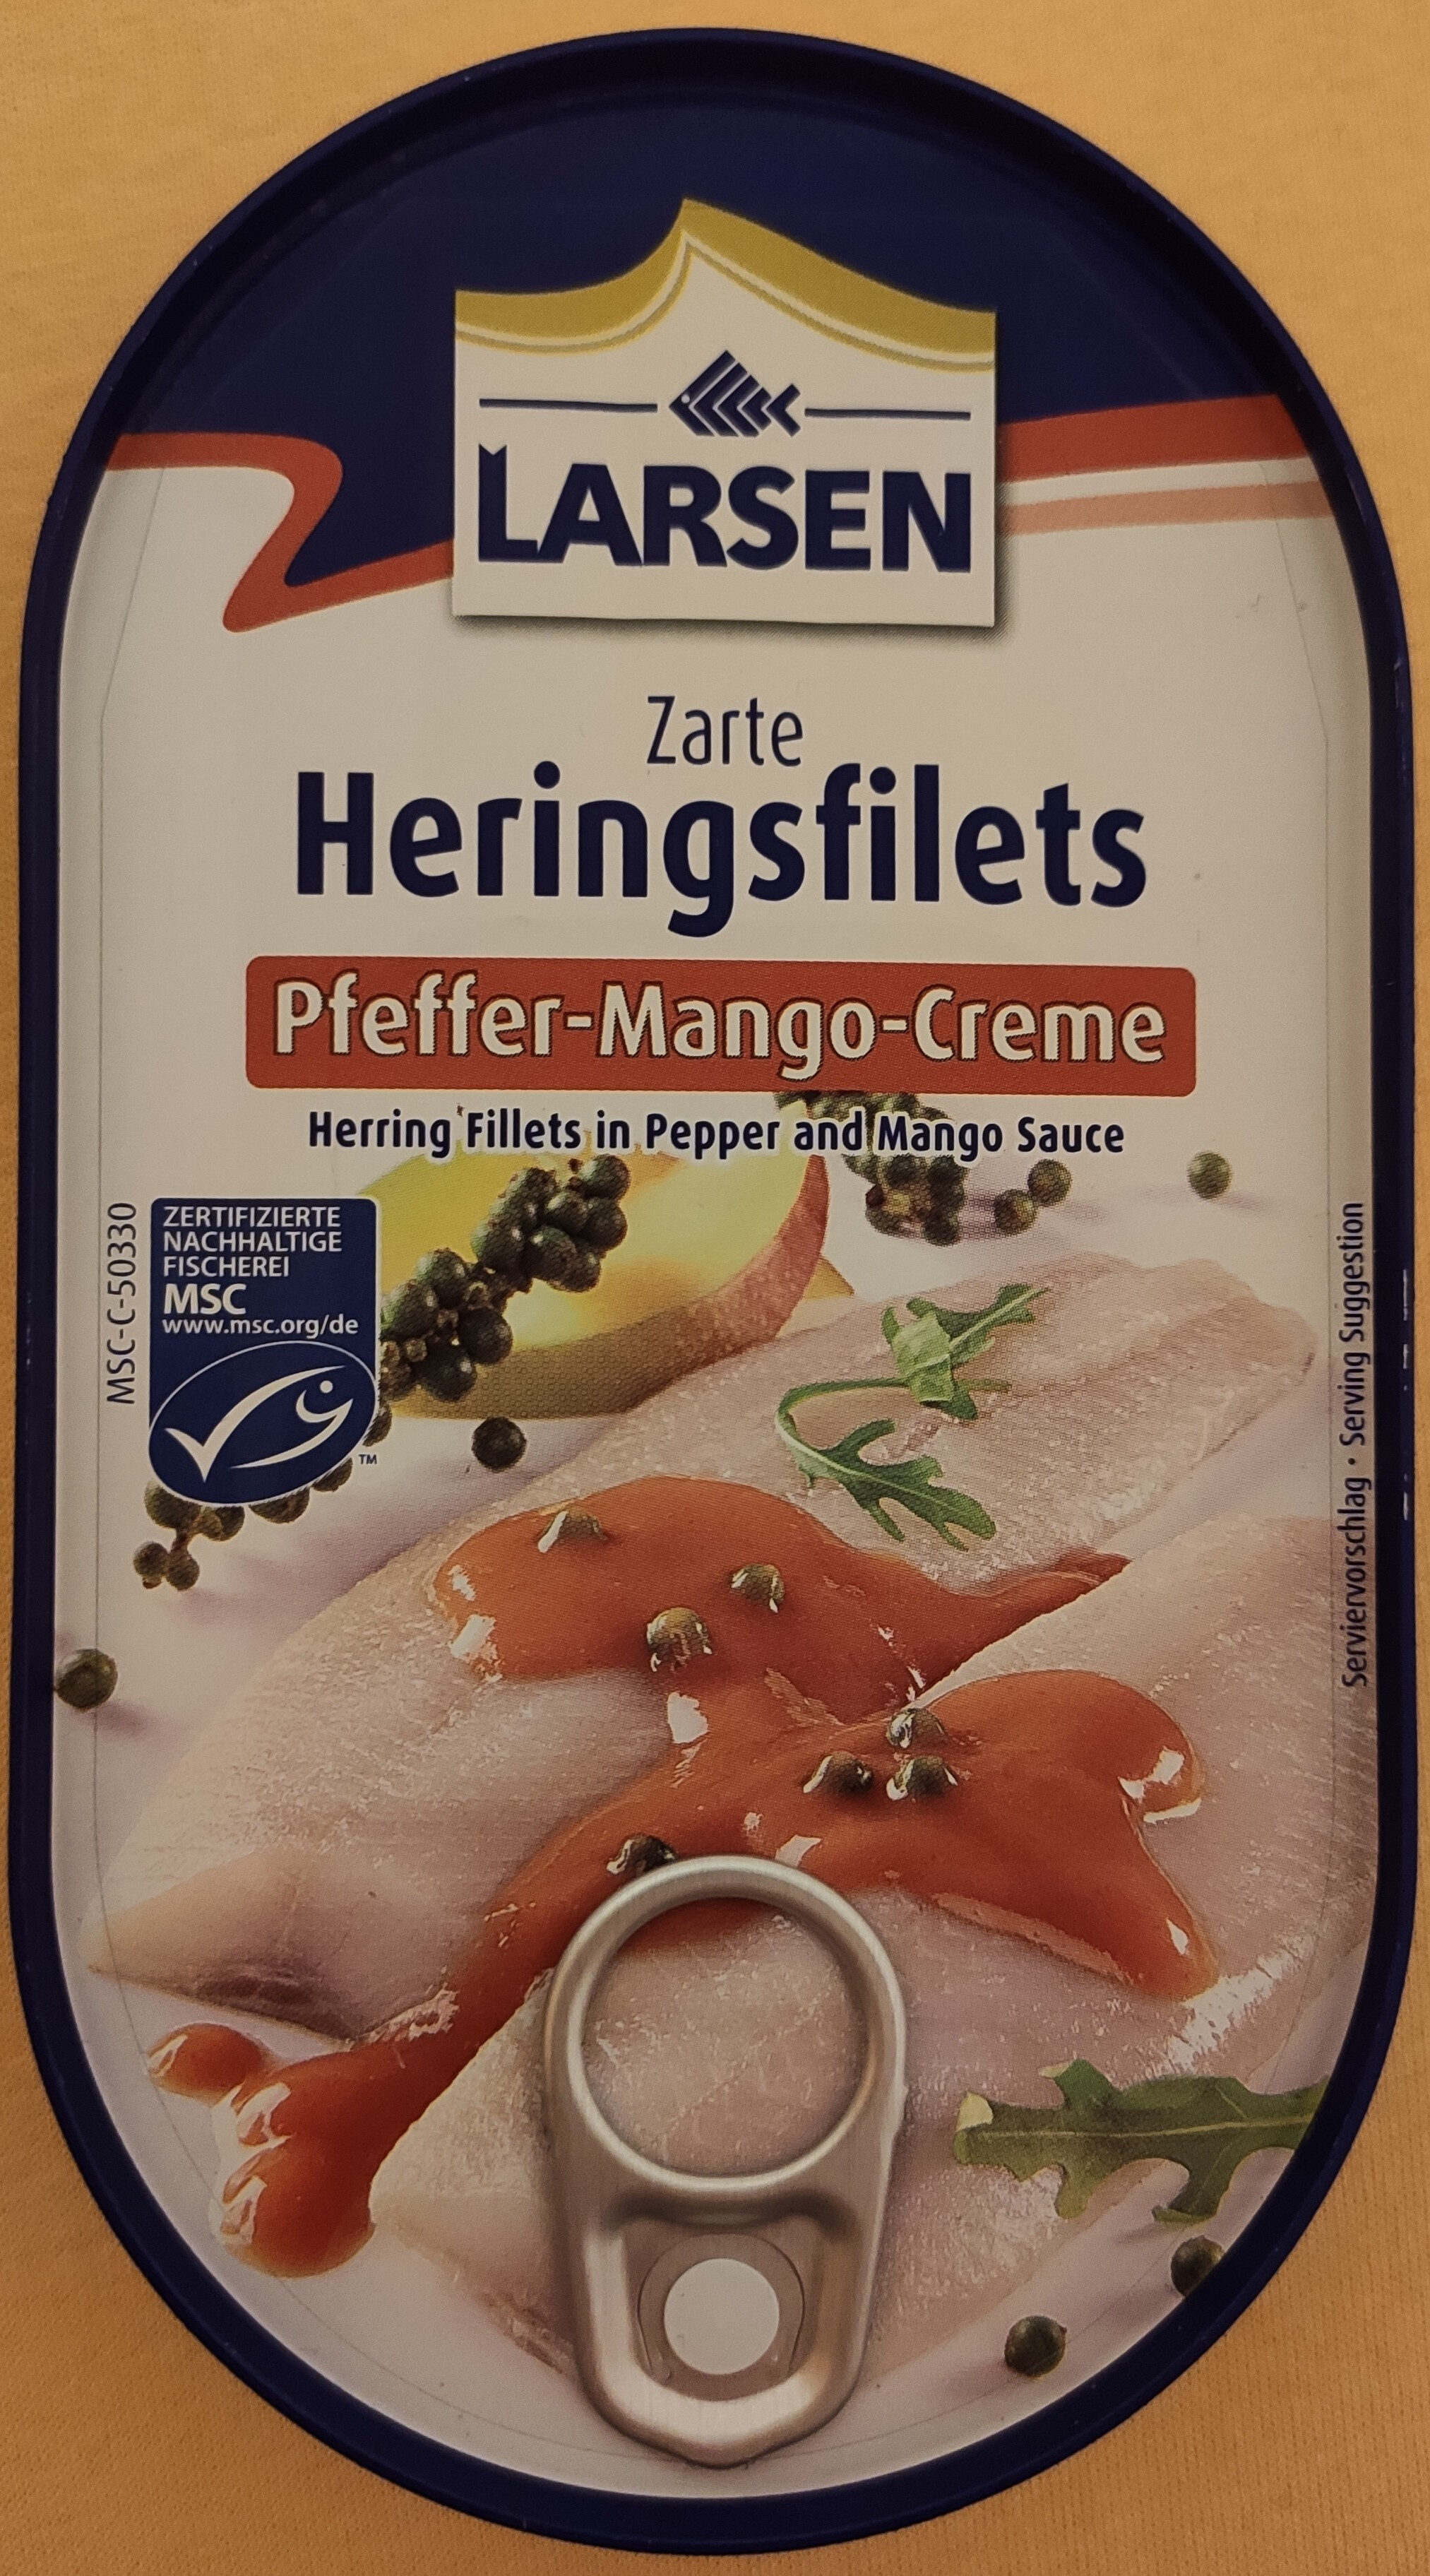 Zarte Heringsfilets Pfeffer-Mango-Creme - Product - de